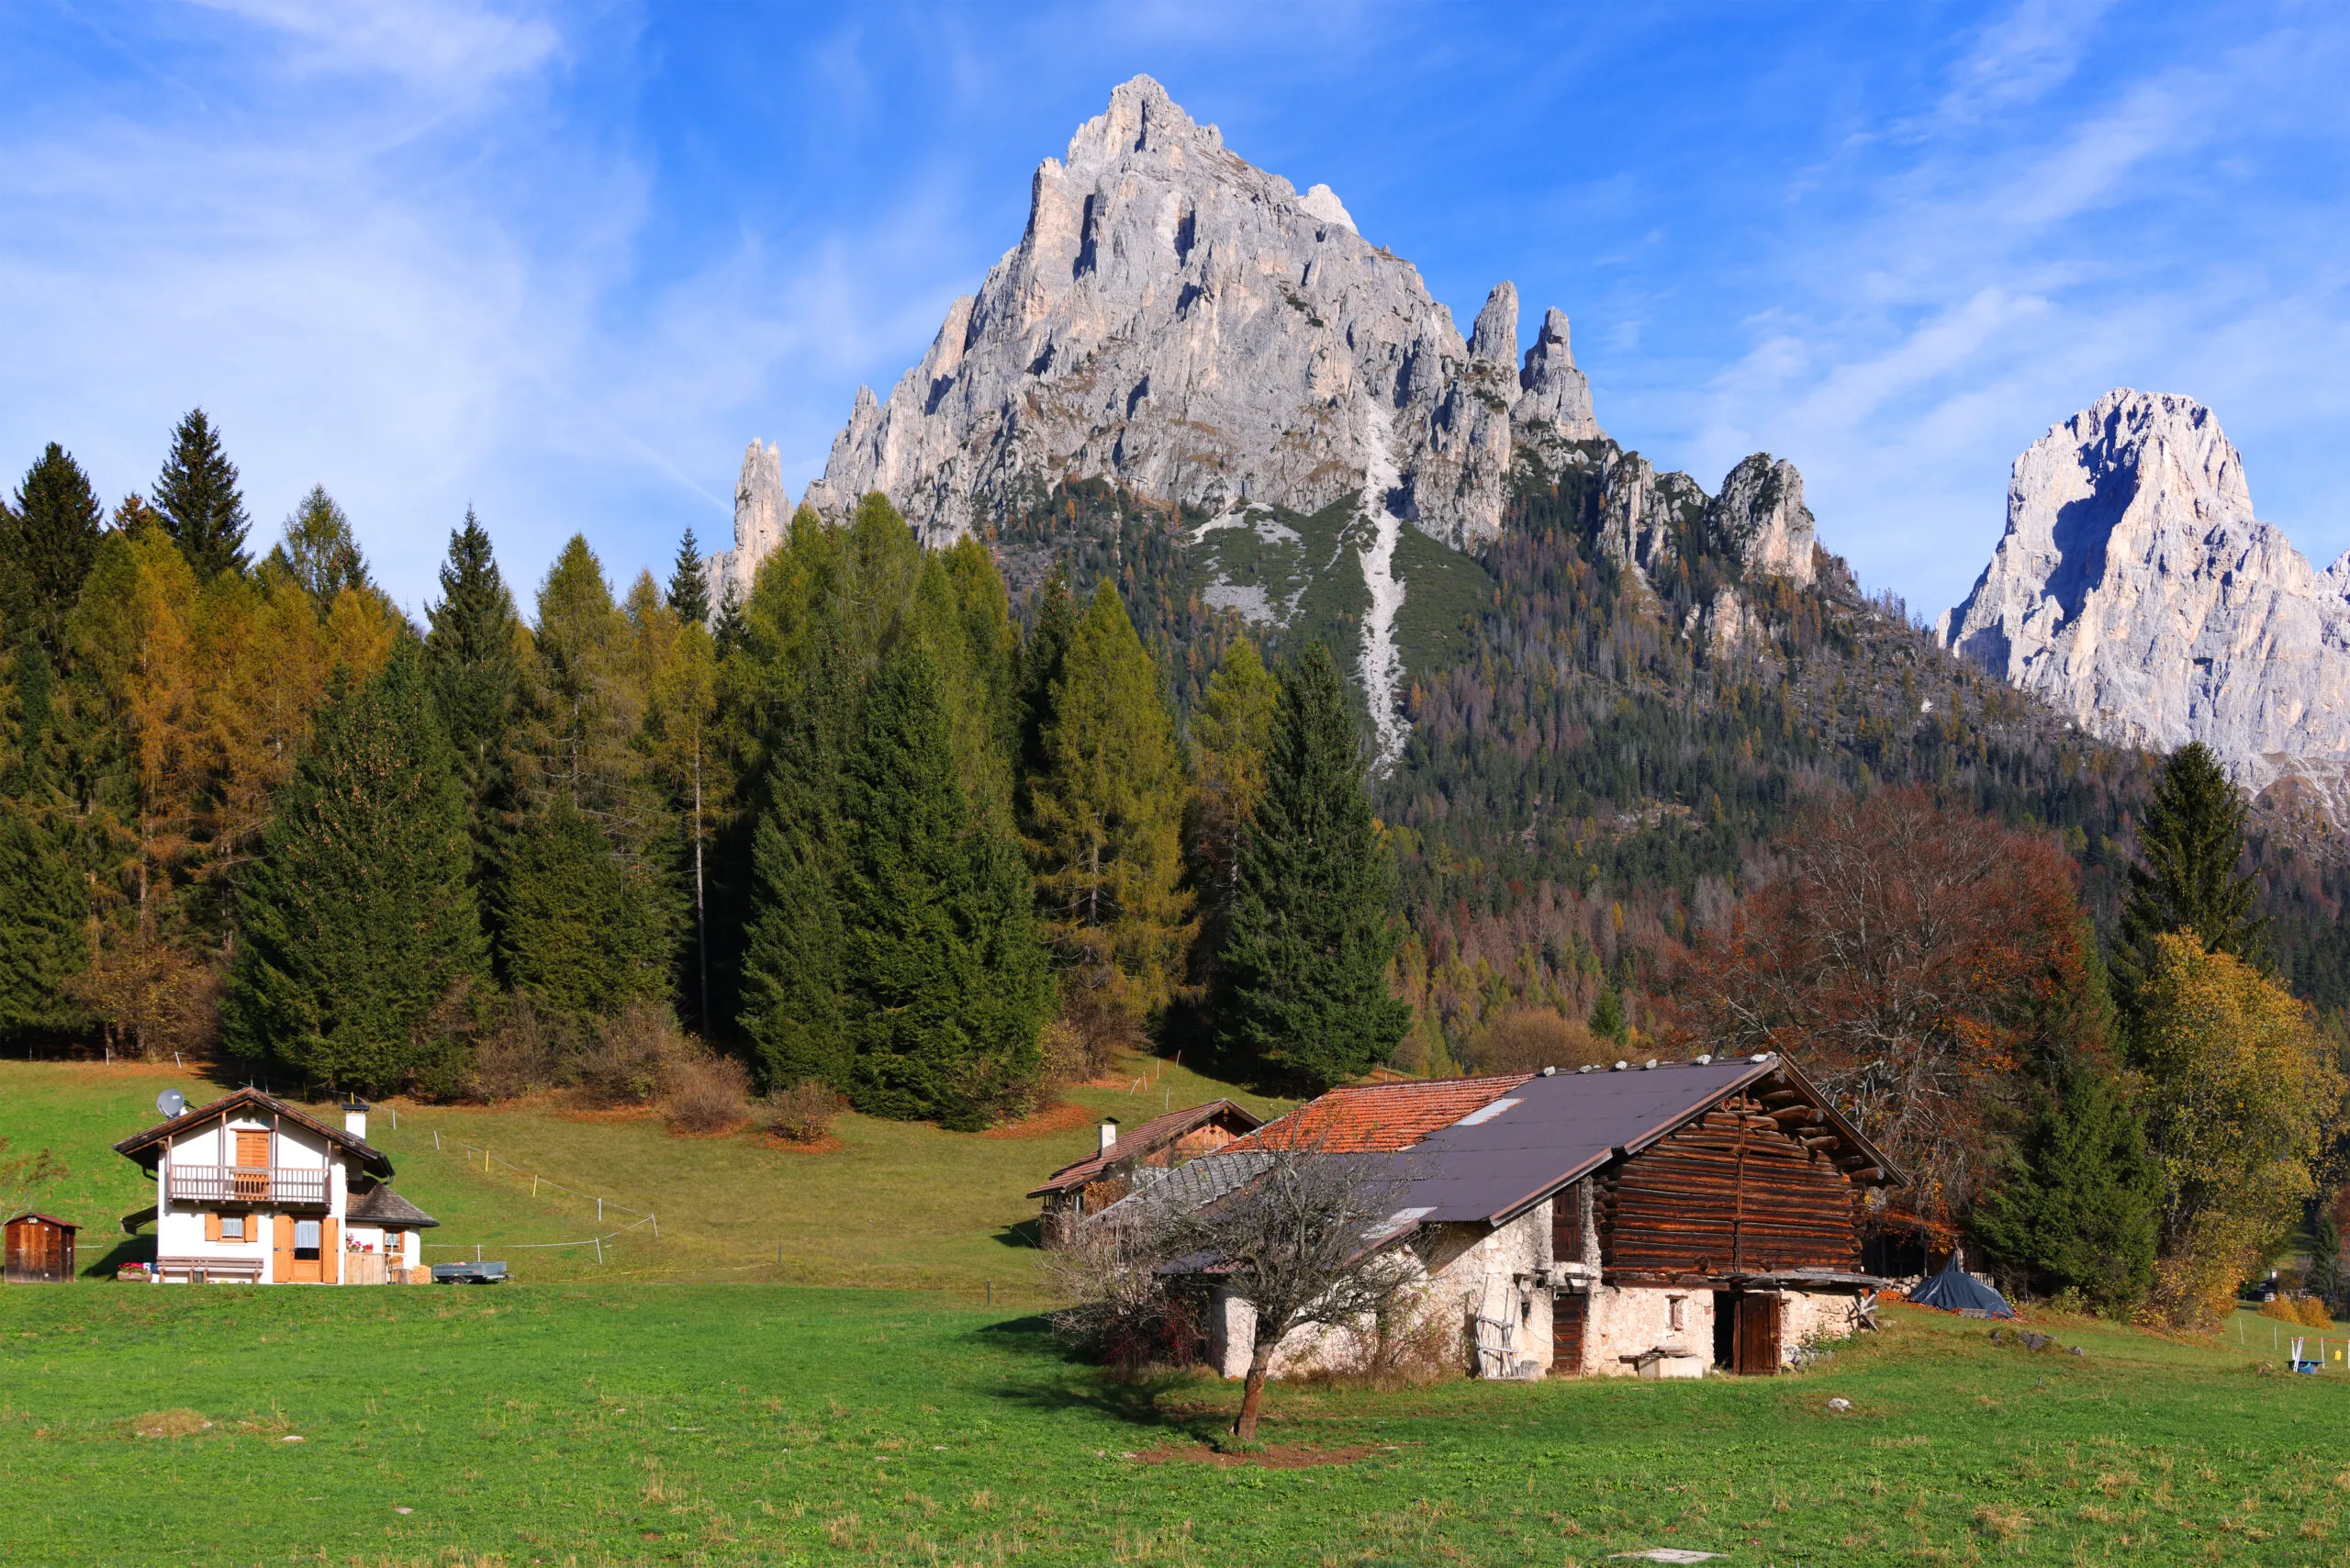 Couleurs d'automne dans le Val Pradidali, Pale di San Martino, Dolomites, Italie